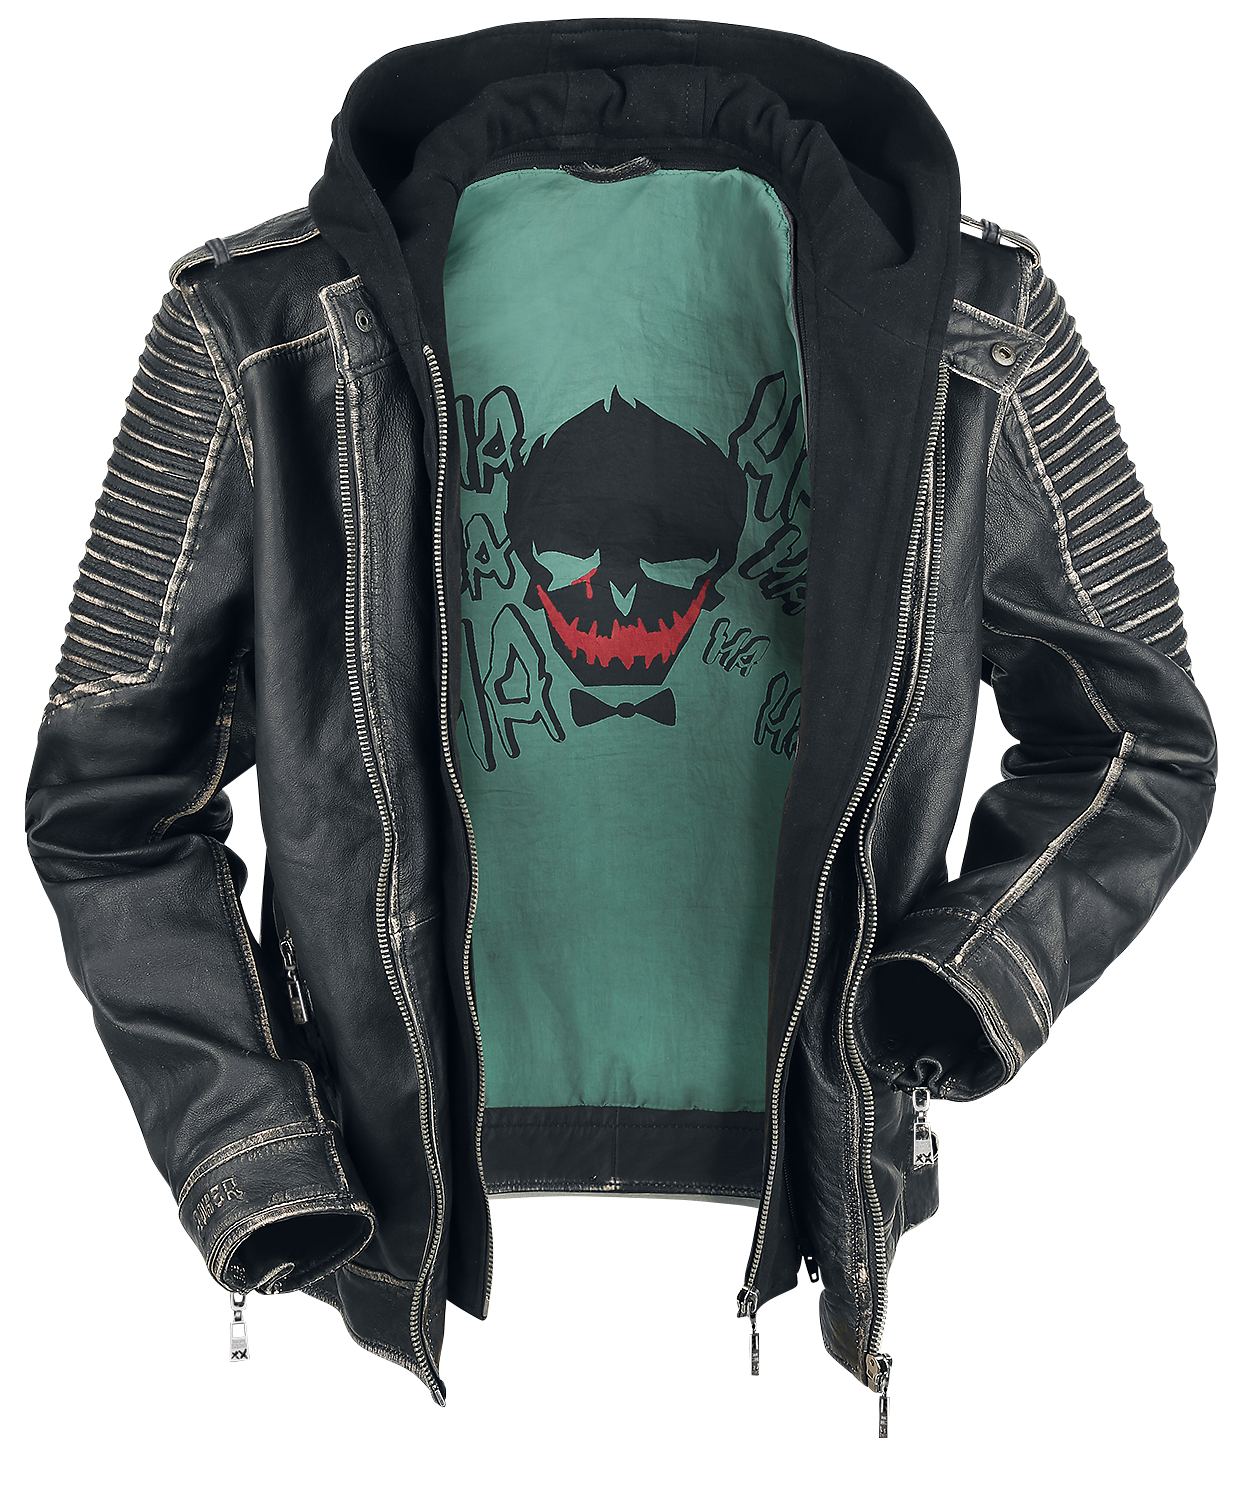 Suicide Squad - DC Comics Lederjacke - The Joker - S bis 3XL - für Männer - Größe XXL - schwarz  - EMP exklusives Merchandise!